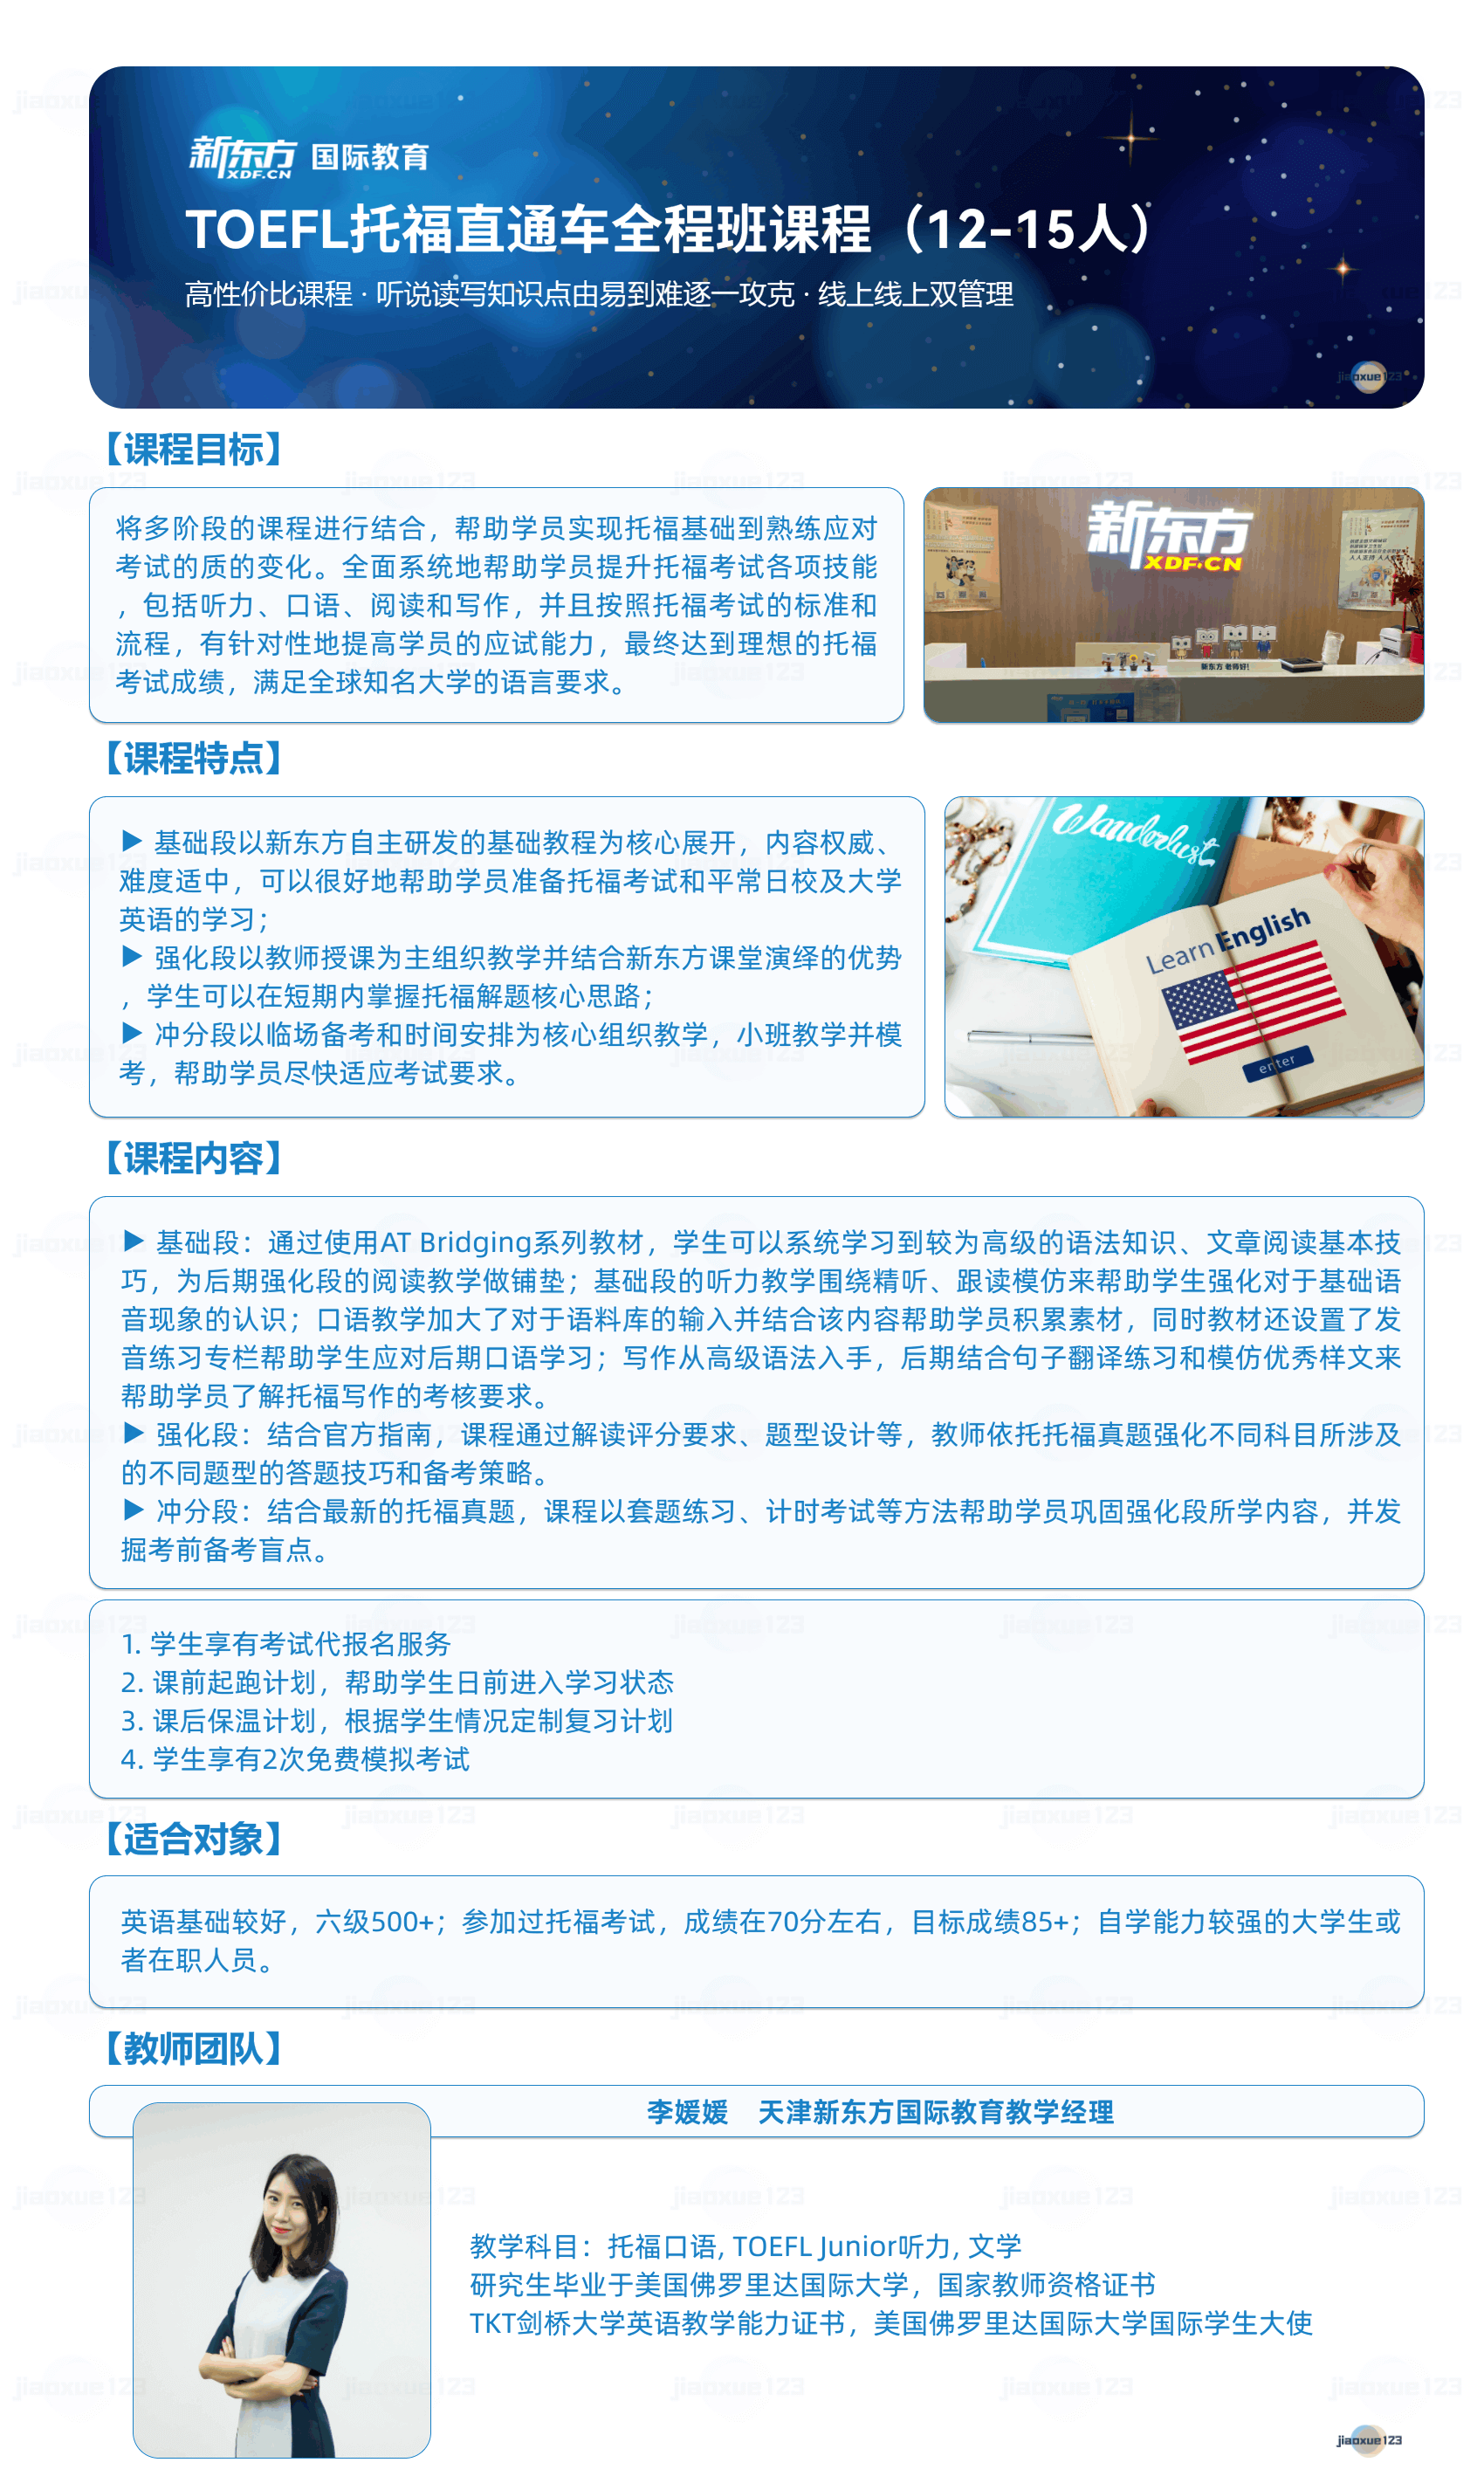 新东方-TOEFL托福直通车全程班课程详情